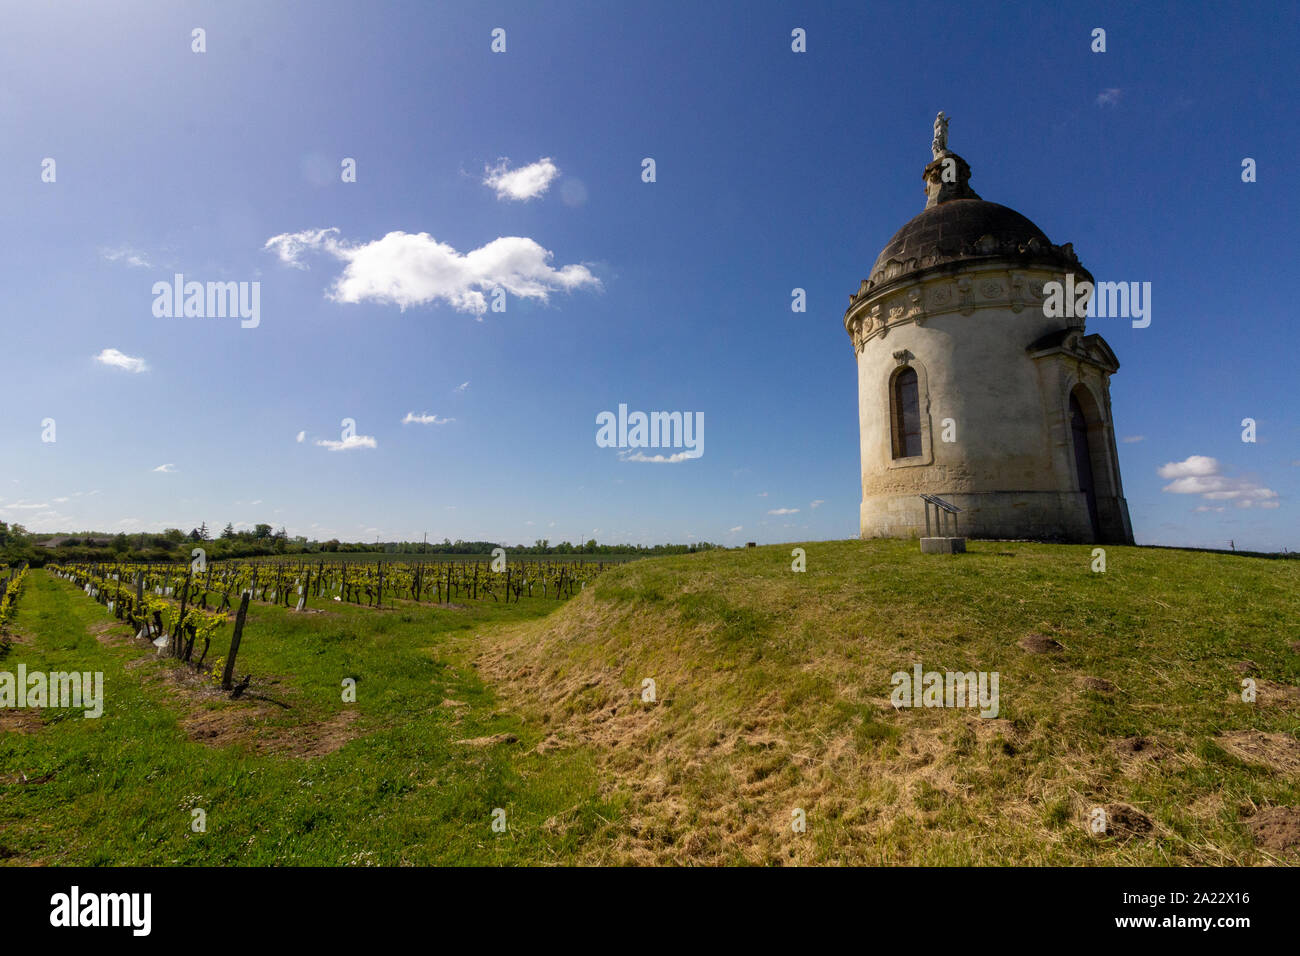 In der Mitte von einem Bordeaux Weinberg gefunden, ein runder Turm Kapelle steht auf einem kleinen Hügel Stockfoto